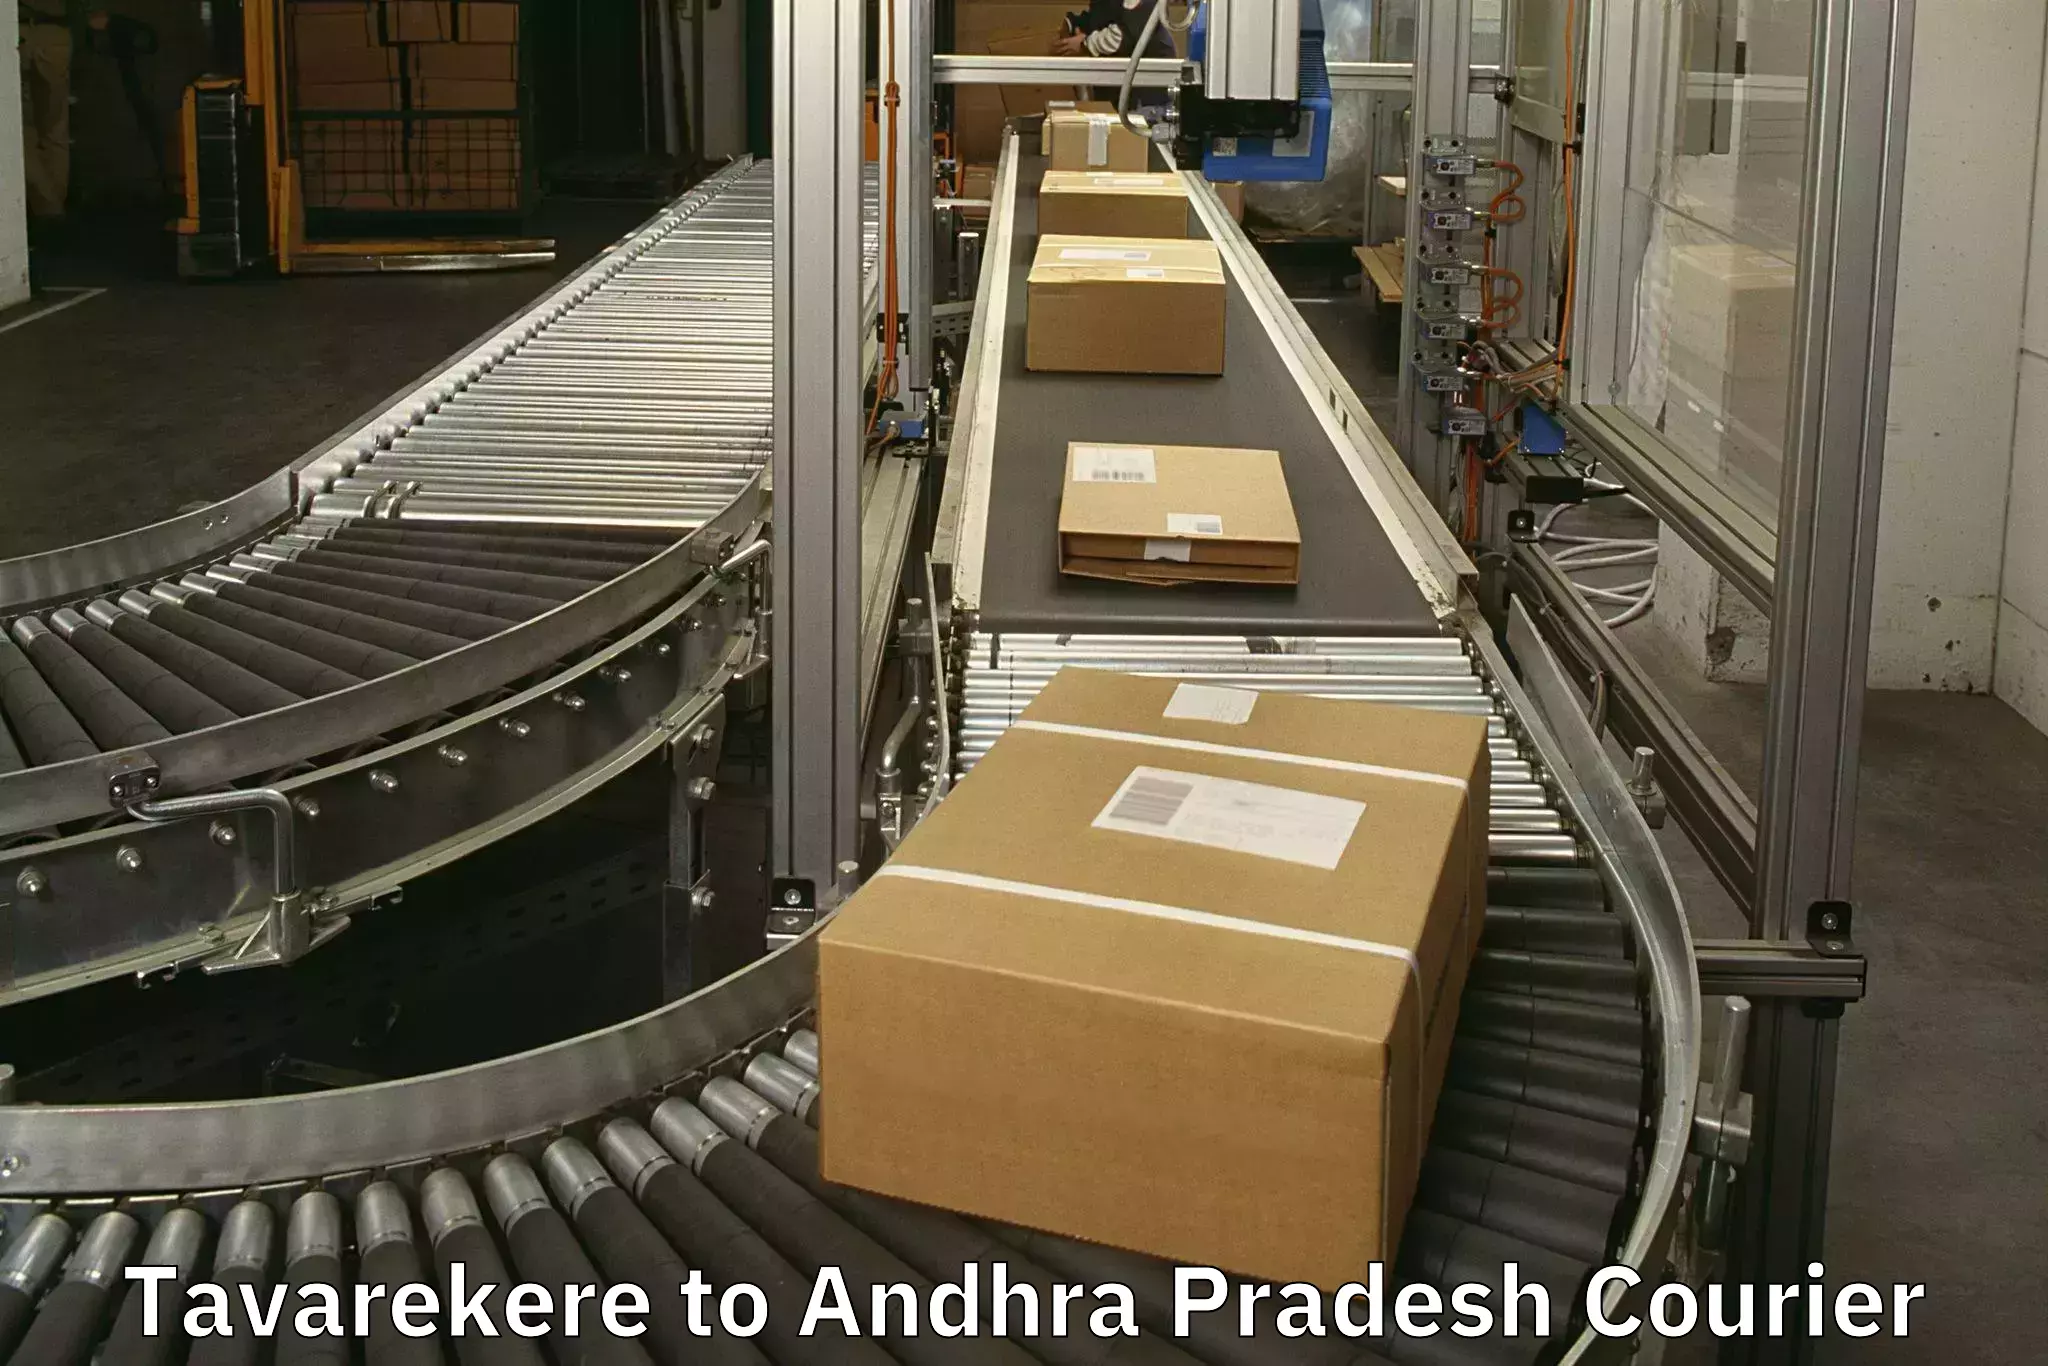 Door-to-door baggage service Tavarekere to Andhra Pradesh